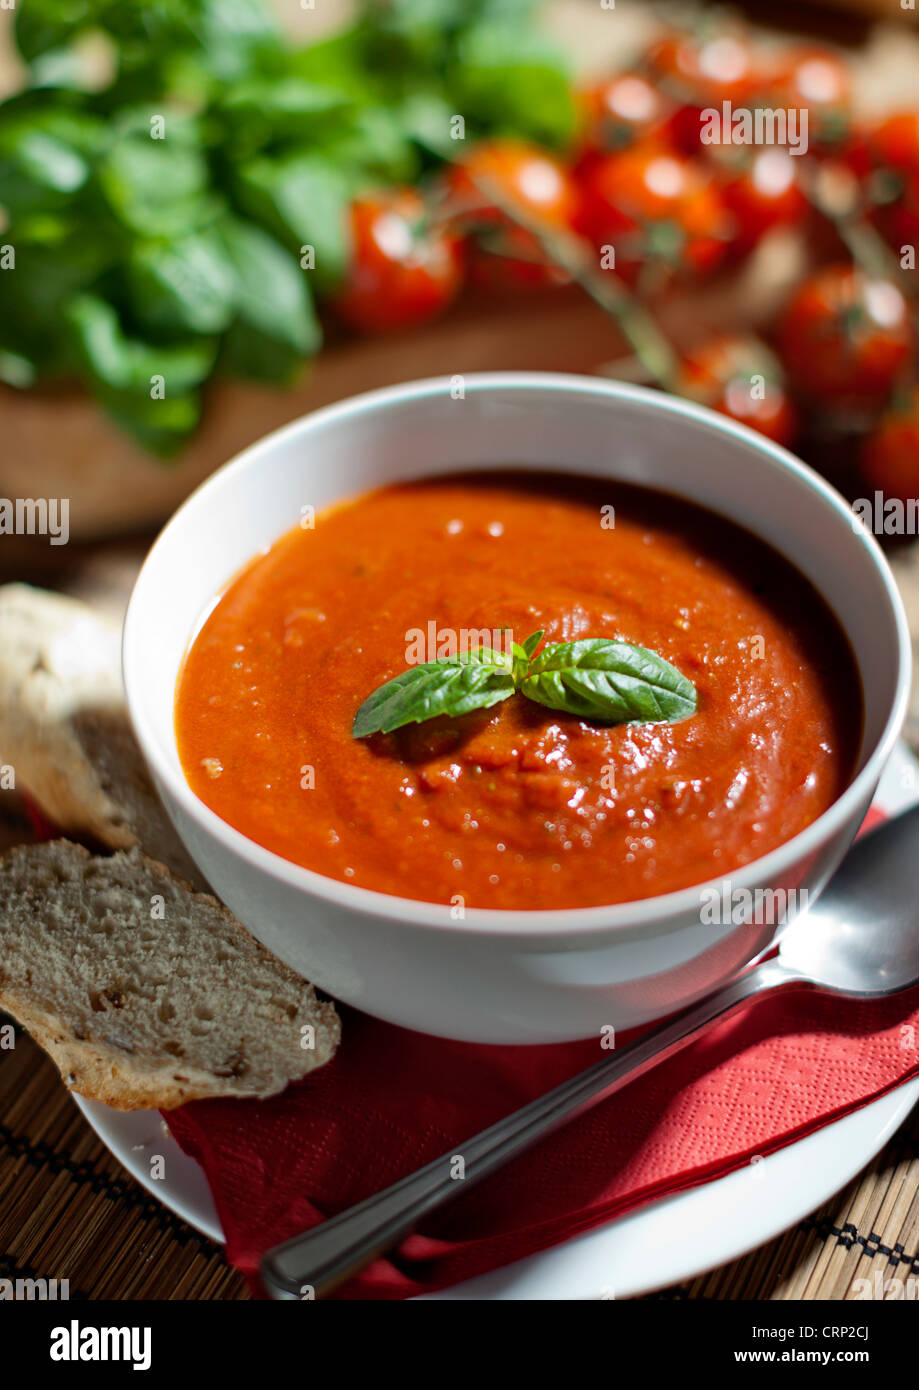 Soupe chaude aux tomates et basilic Banque D'Images